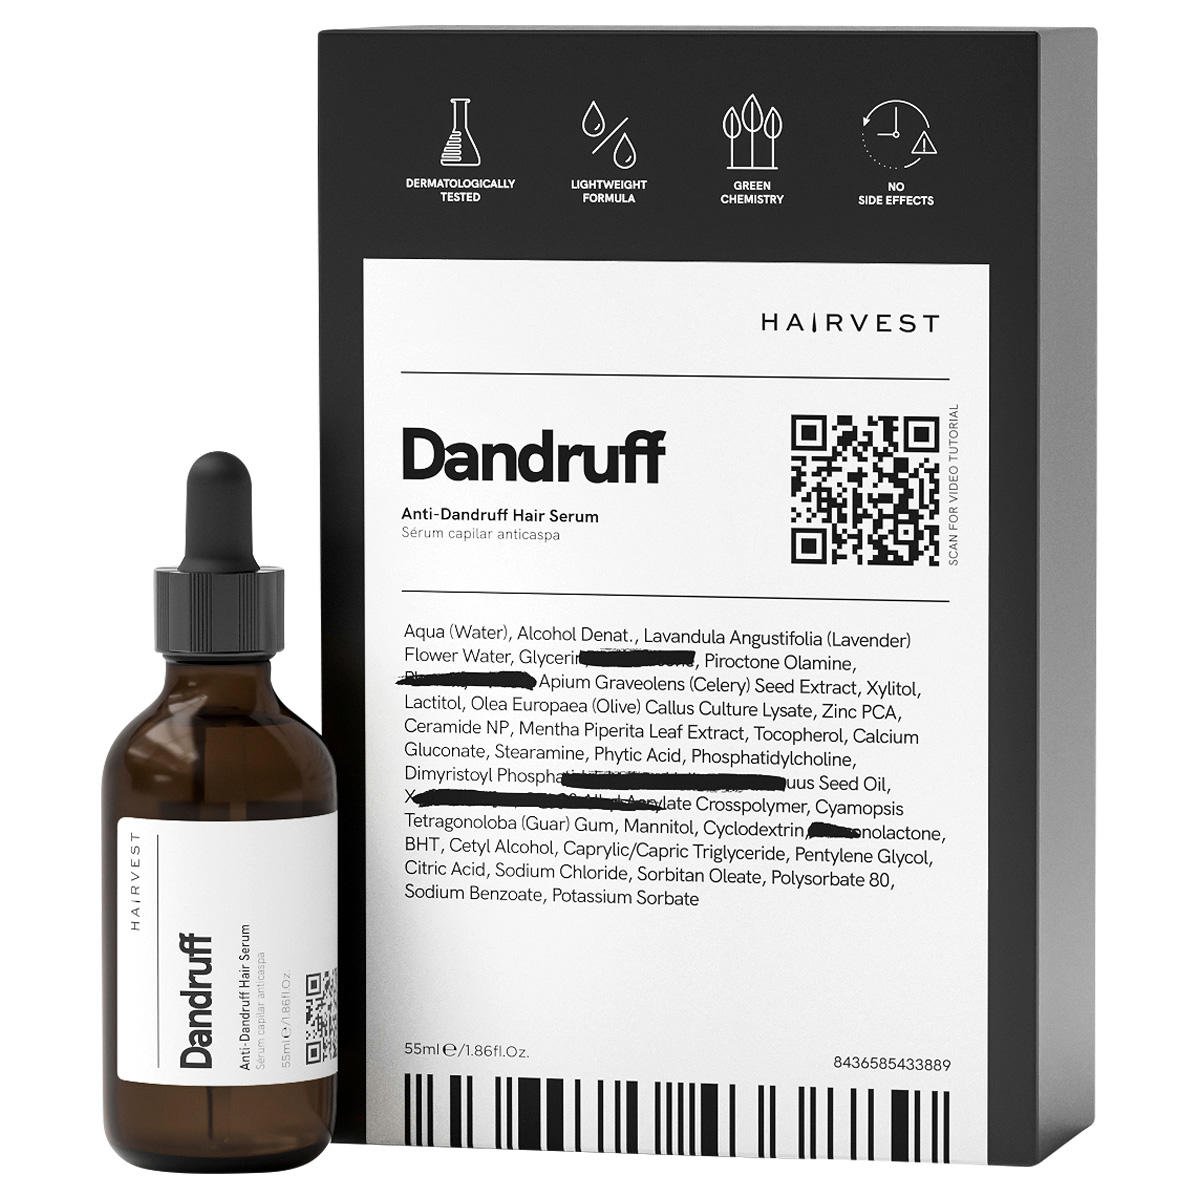 Hairvest DANDRUFF Anti-Dandruff Hair Serum 55 ml - 2